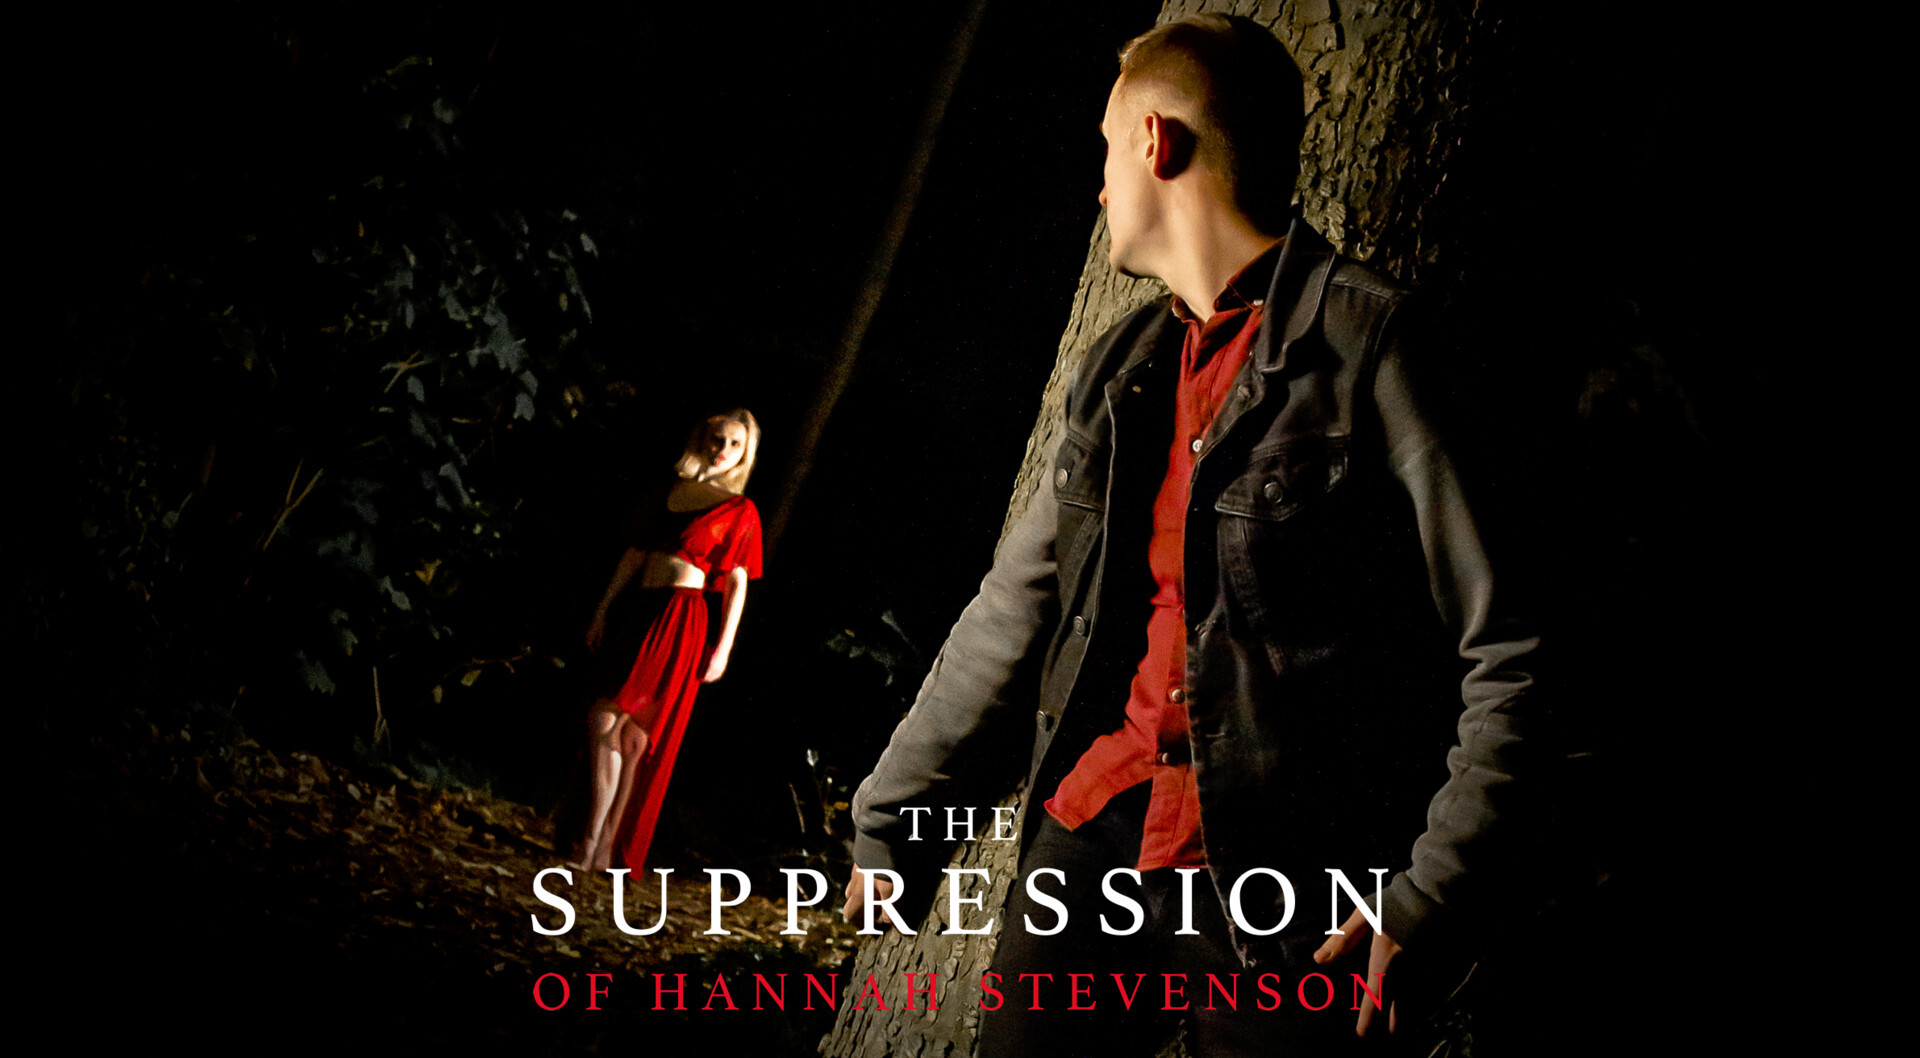 ჰანა სტივენსონის ჩახშობა / The Suppression of Hannah Stevenson